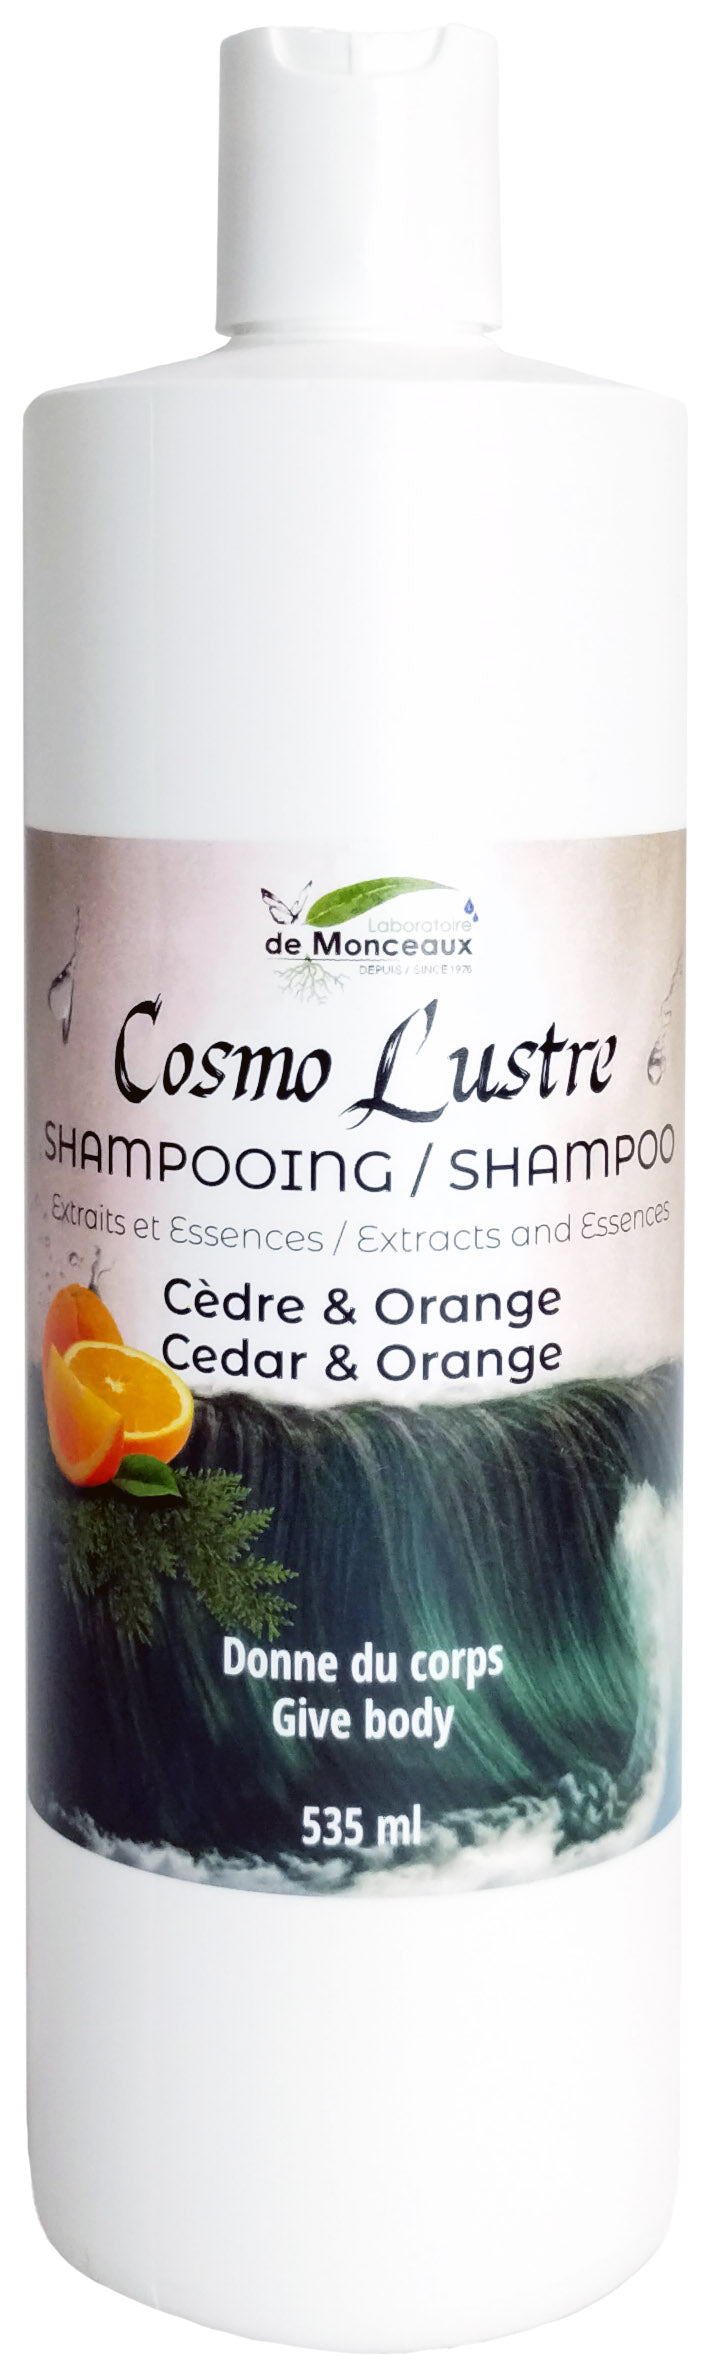 Shampoing cèdre et orange 535ml